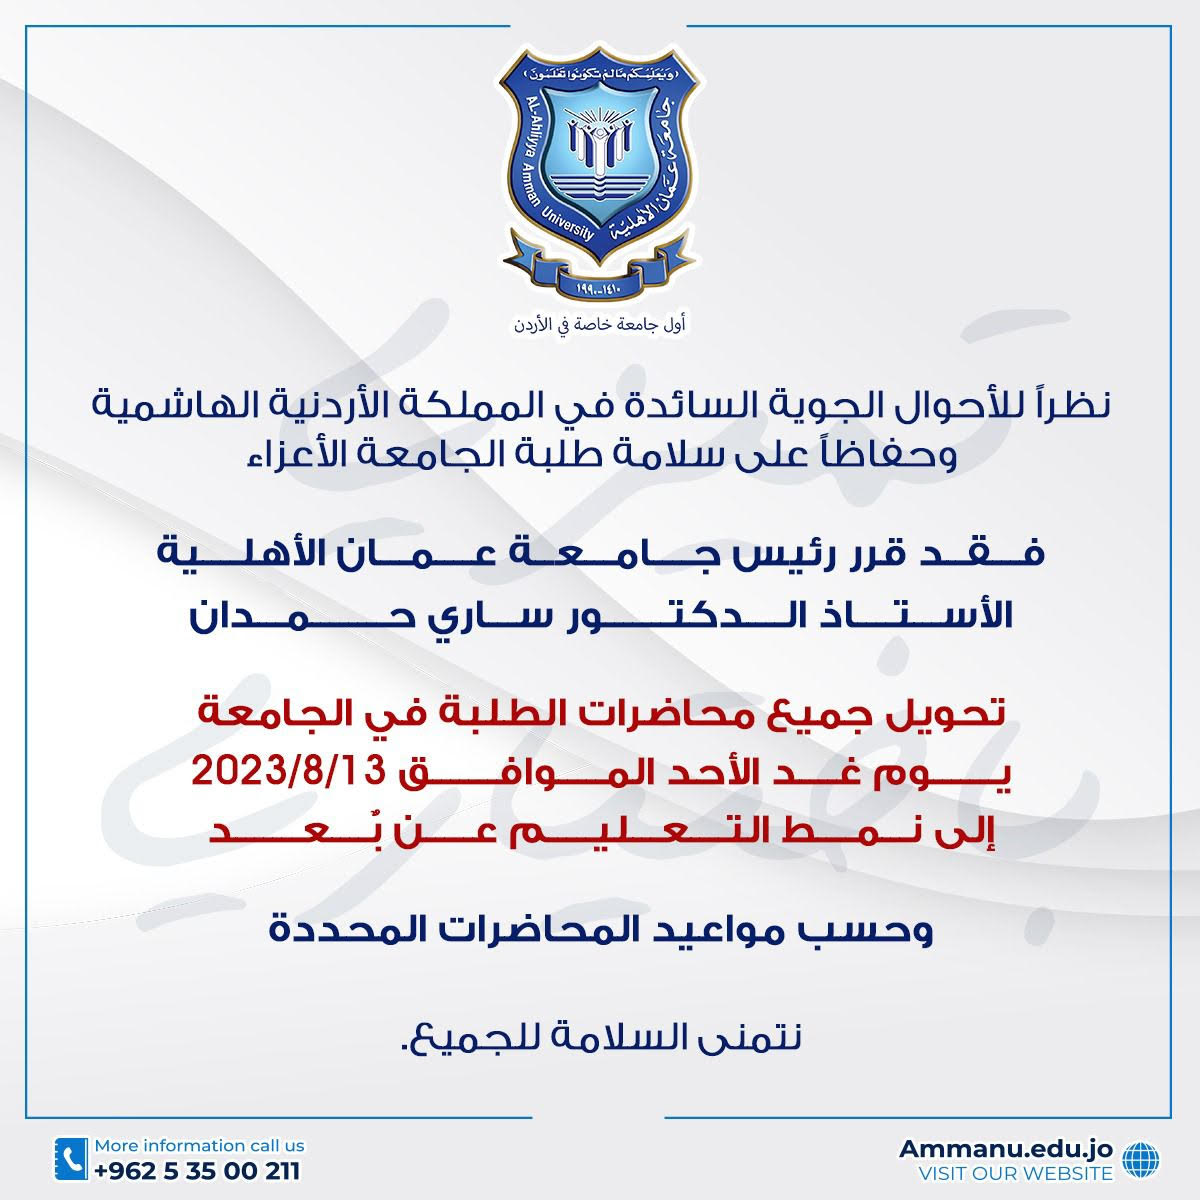 بسبب الأحوال الجوية السائدة ..تحويل محاضرات الطلبة في عمان الاهلية يوم غدٍ الأحد إلى نمط التعليم عن بعد